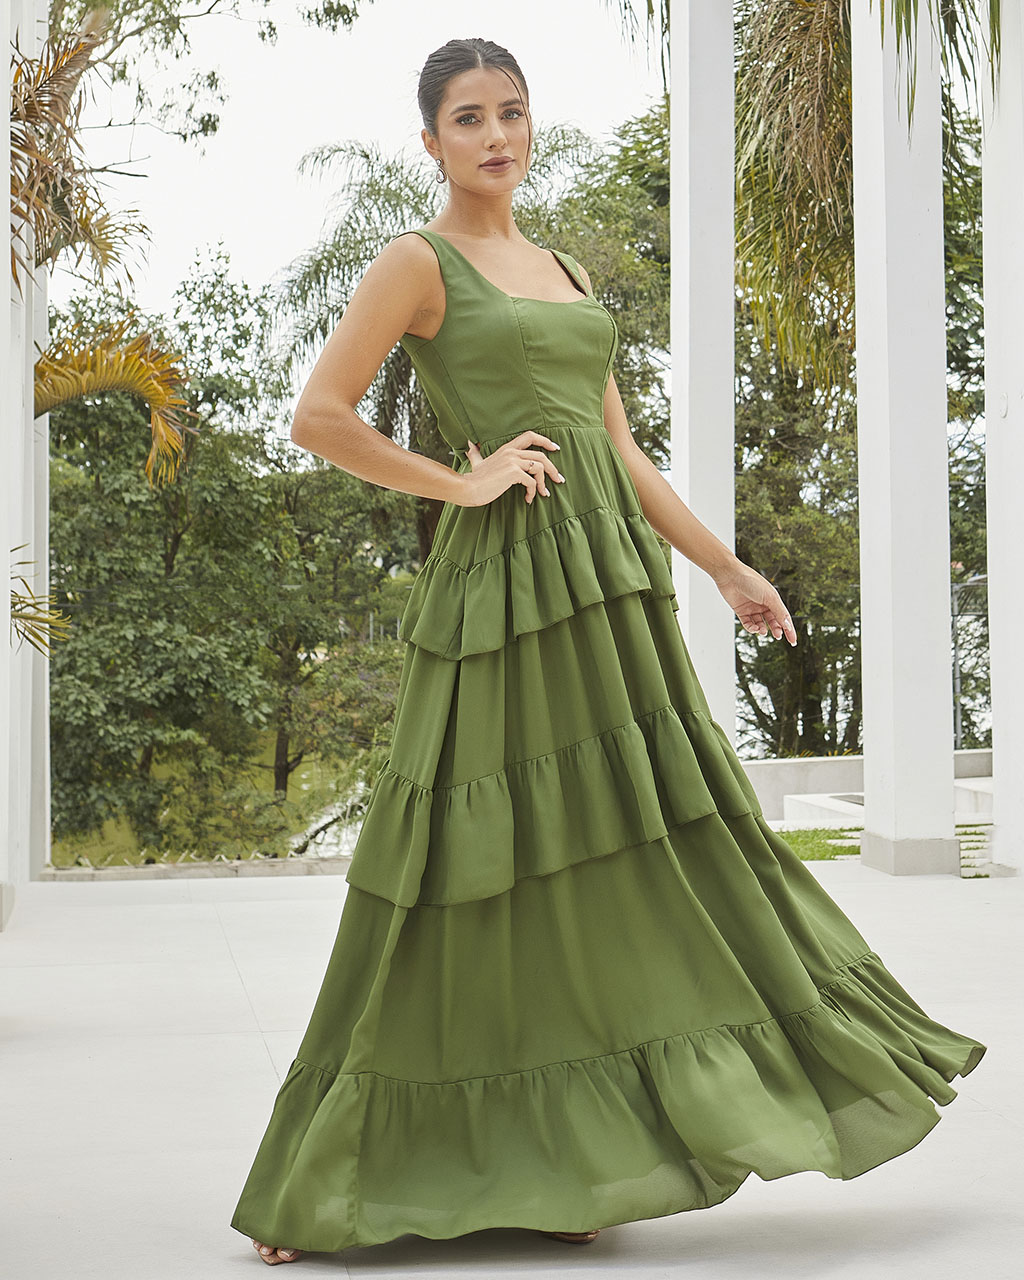 Vestido Longo Verde Oliva Erika  - Empório NM